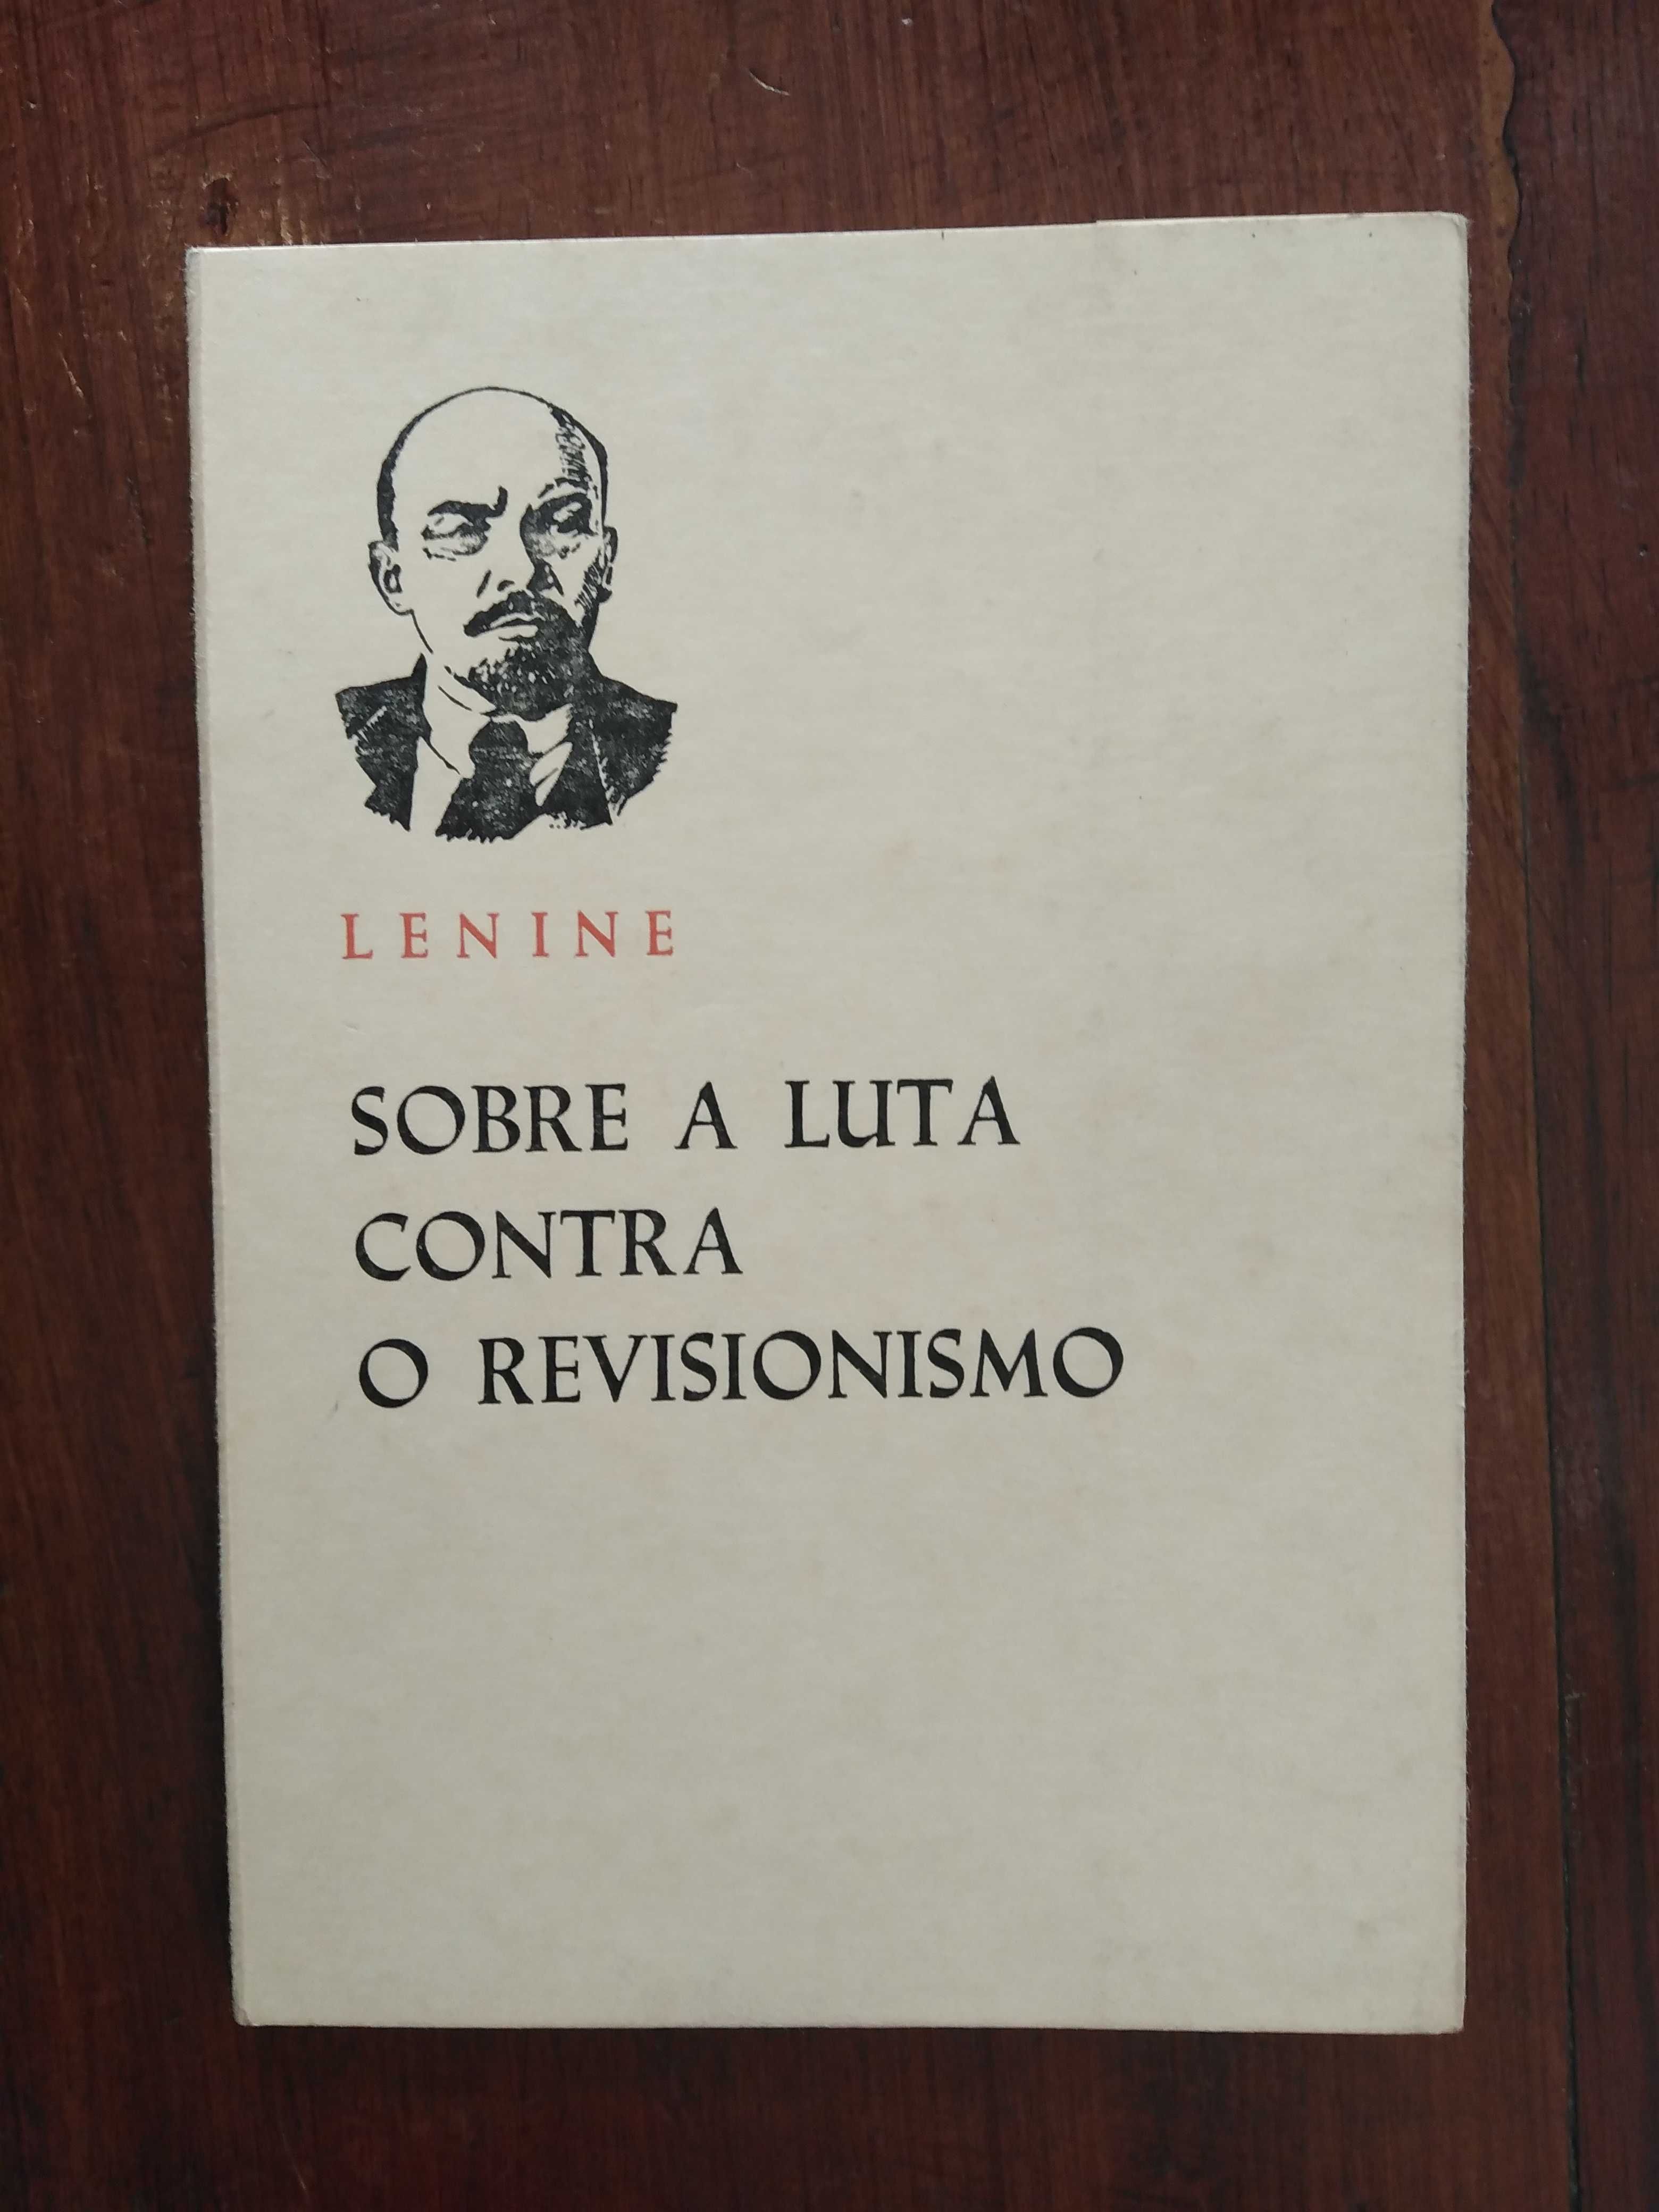 Lenine - Sobre a luta contra o revisionismo